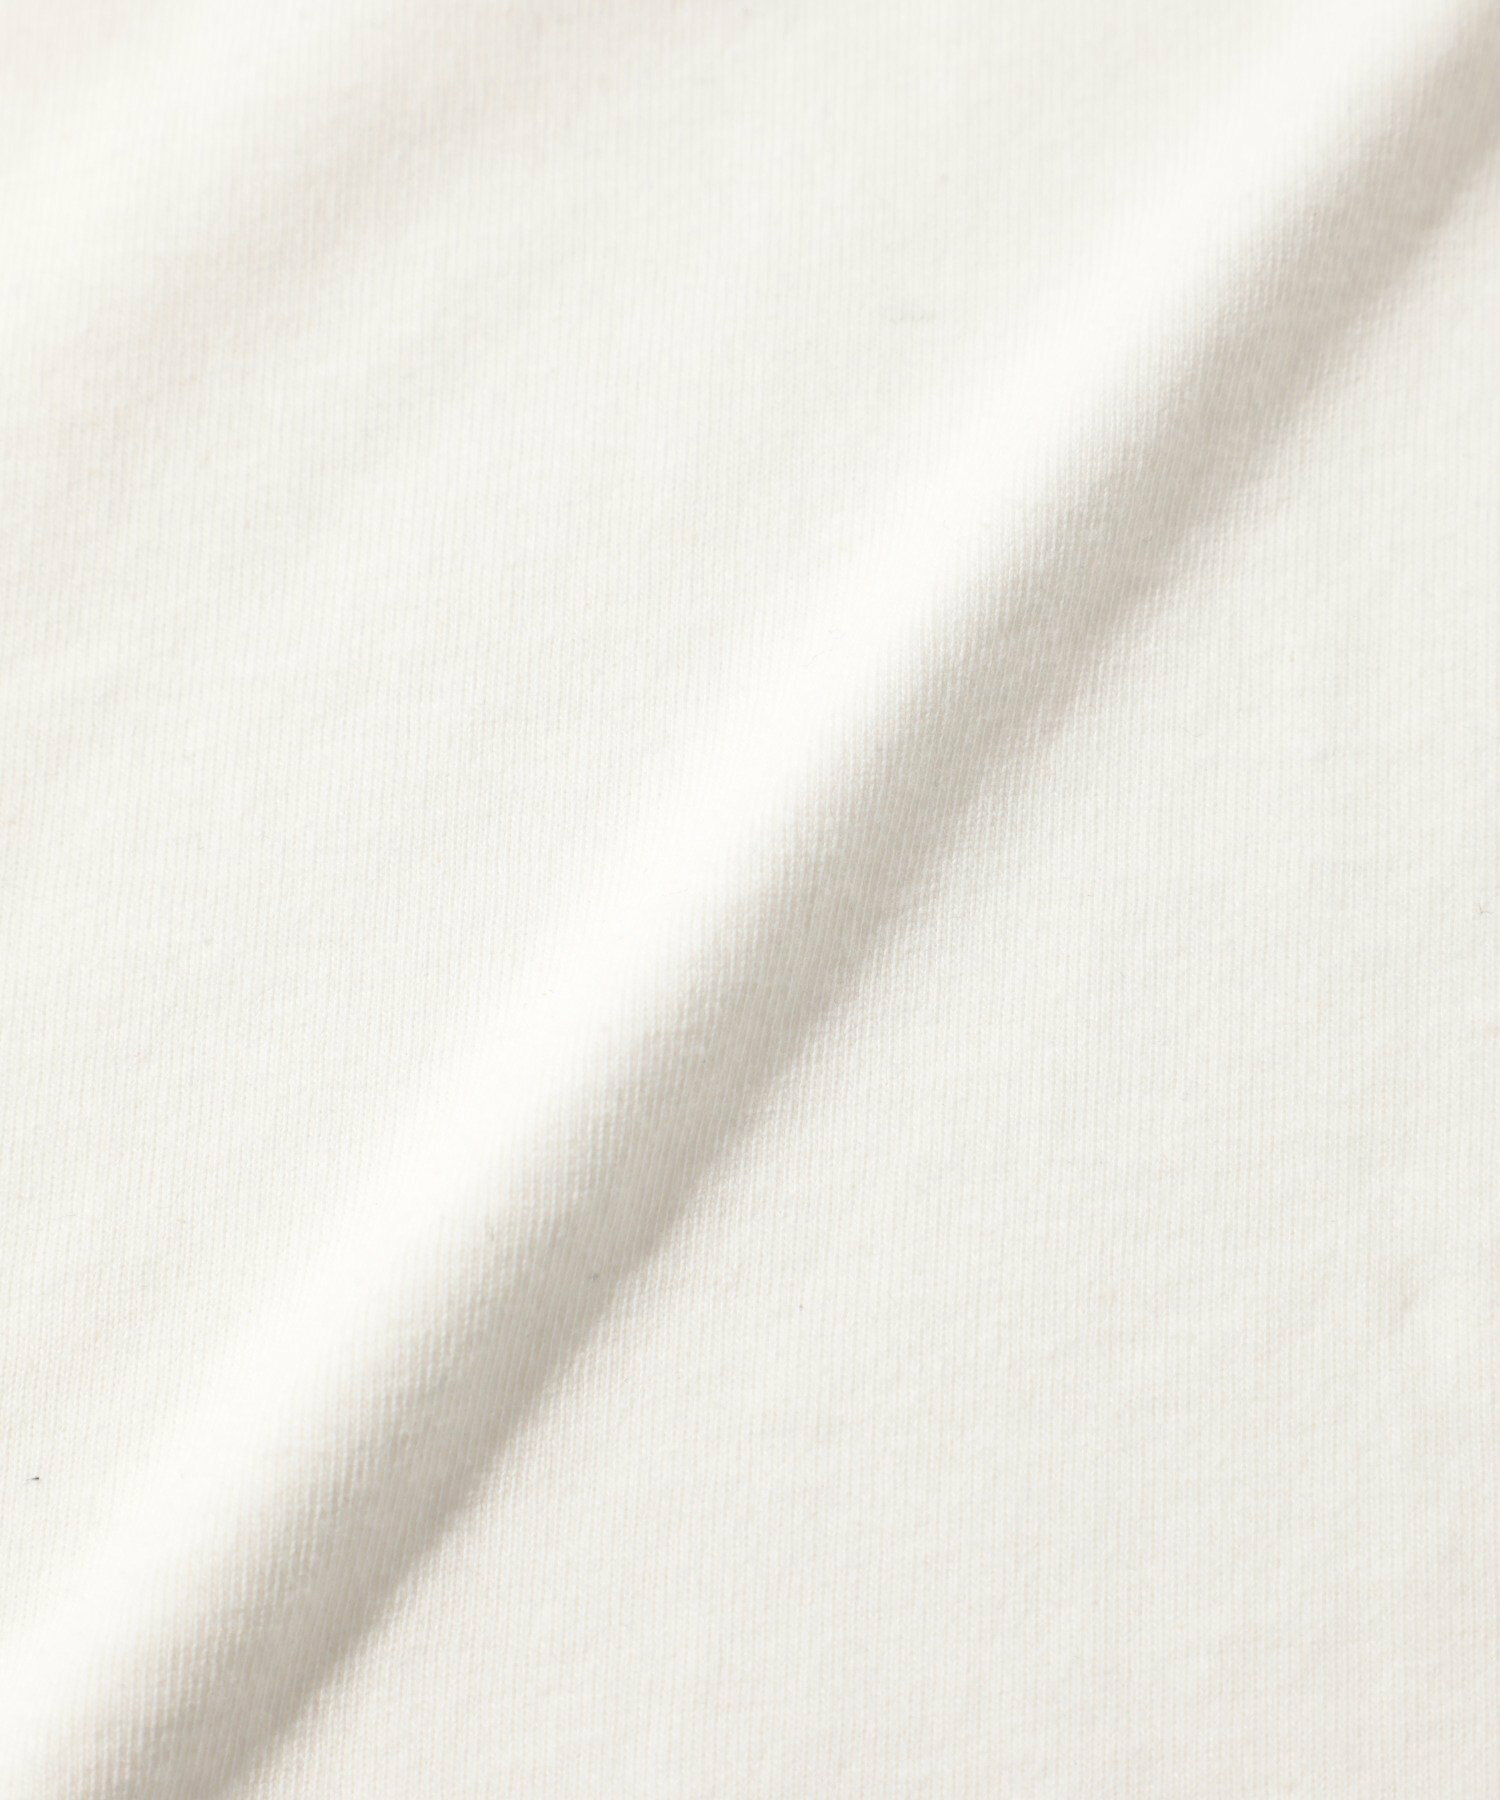 POLO BCS/【SETUP7別注】US Cotton oversize embroidery Tee USAコットンオーバーサイズPOLOプリントTシャツ カジュアル ユニセックス 半袖 Tシャツ ポロビーシーエス